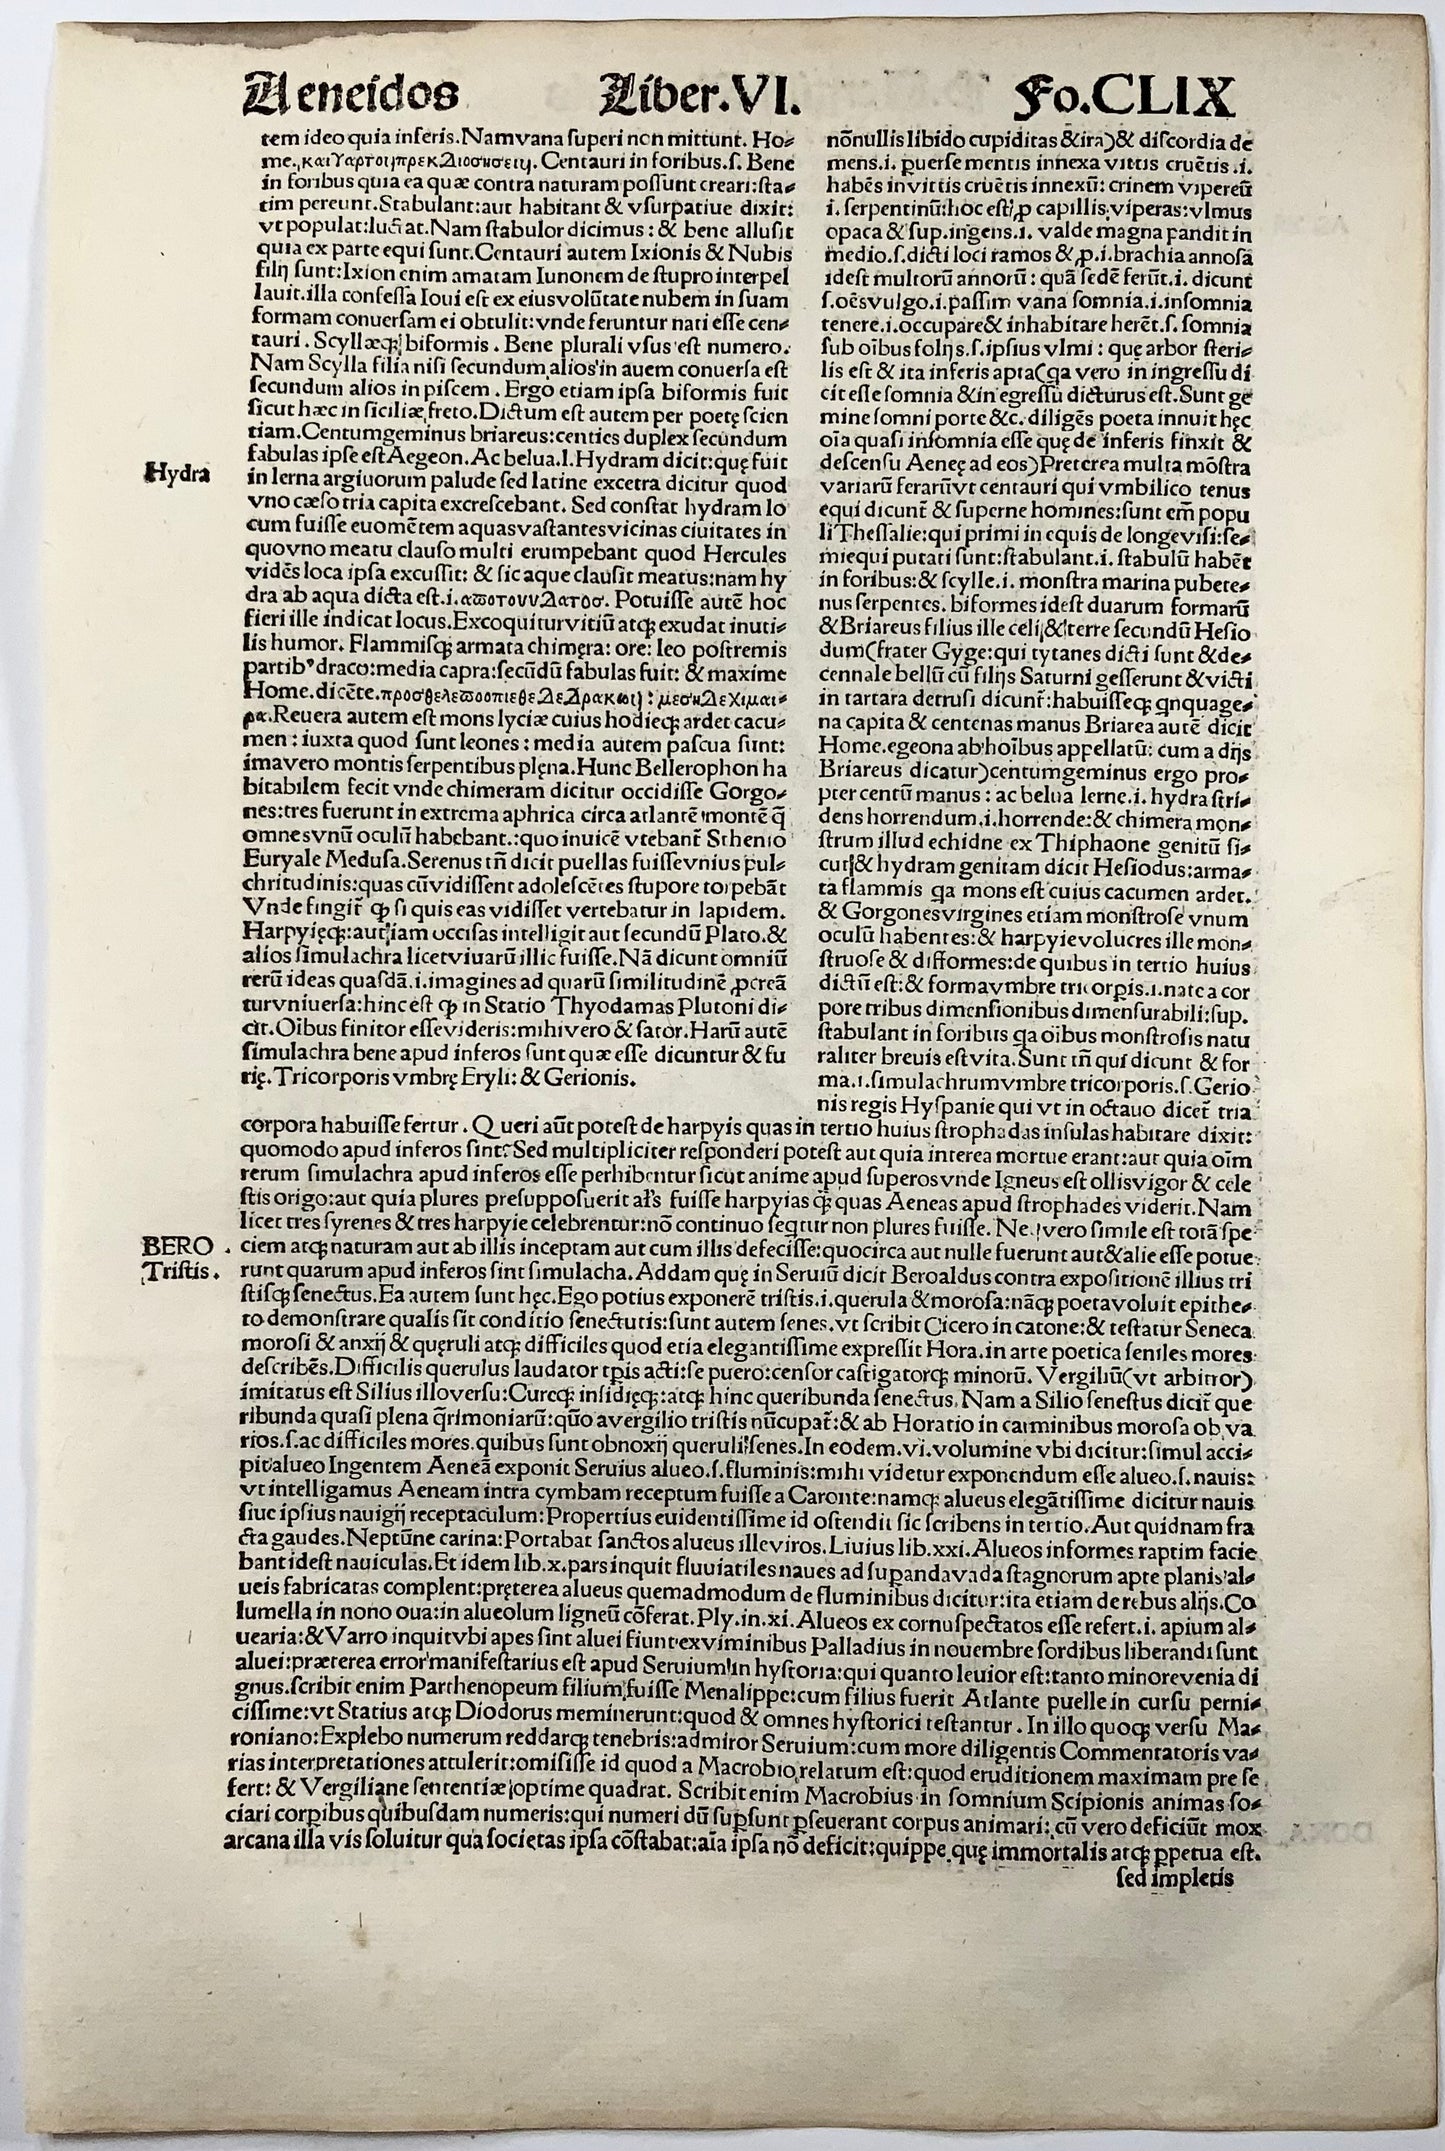 1515 Gli inferi, foglia xilografica Folio Gruninger, Eneide di Virgilio, colore a mano, incisione magistrale